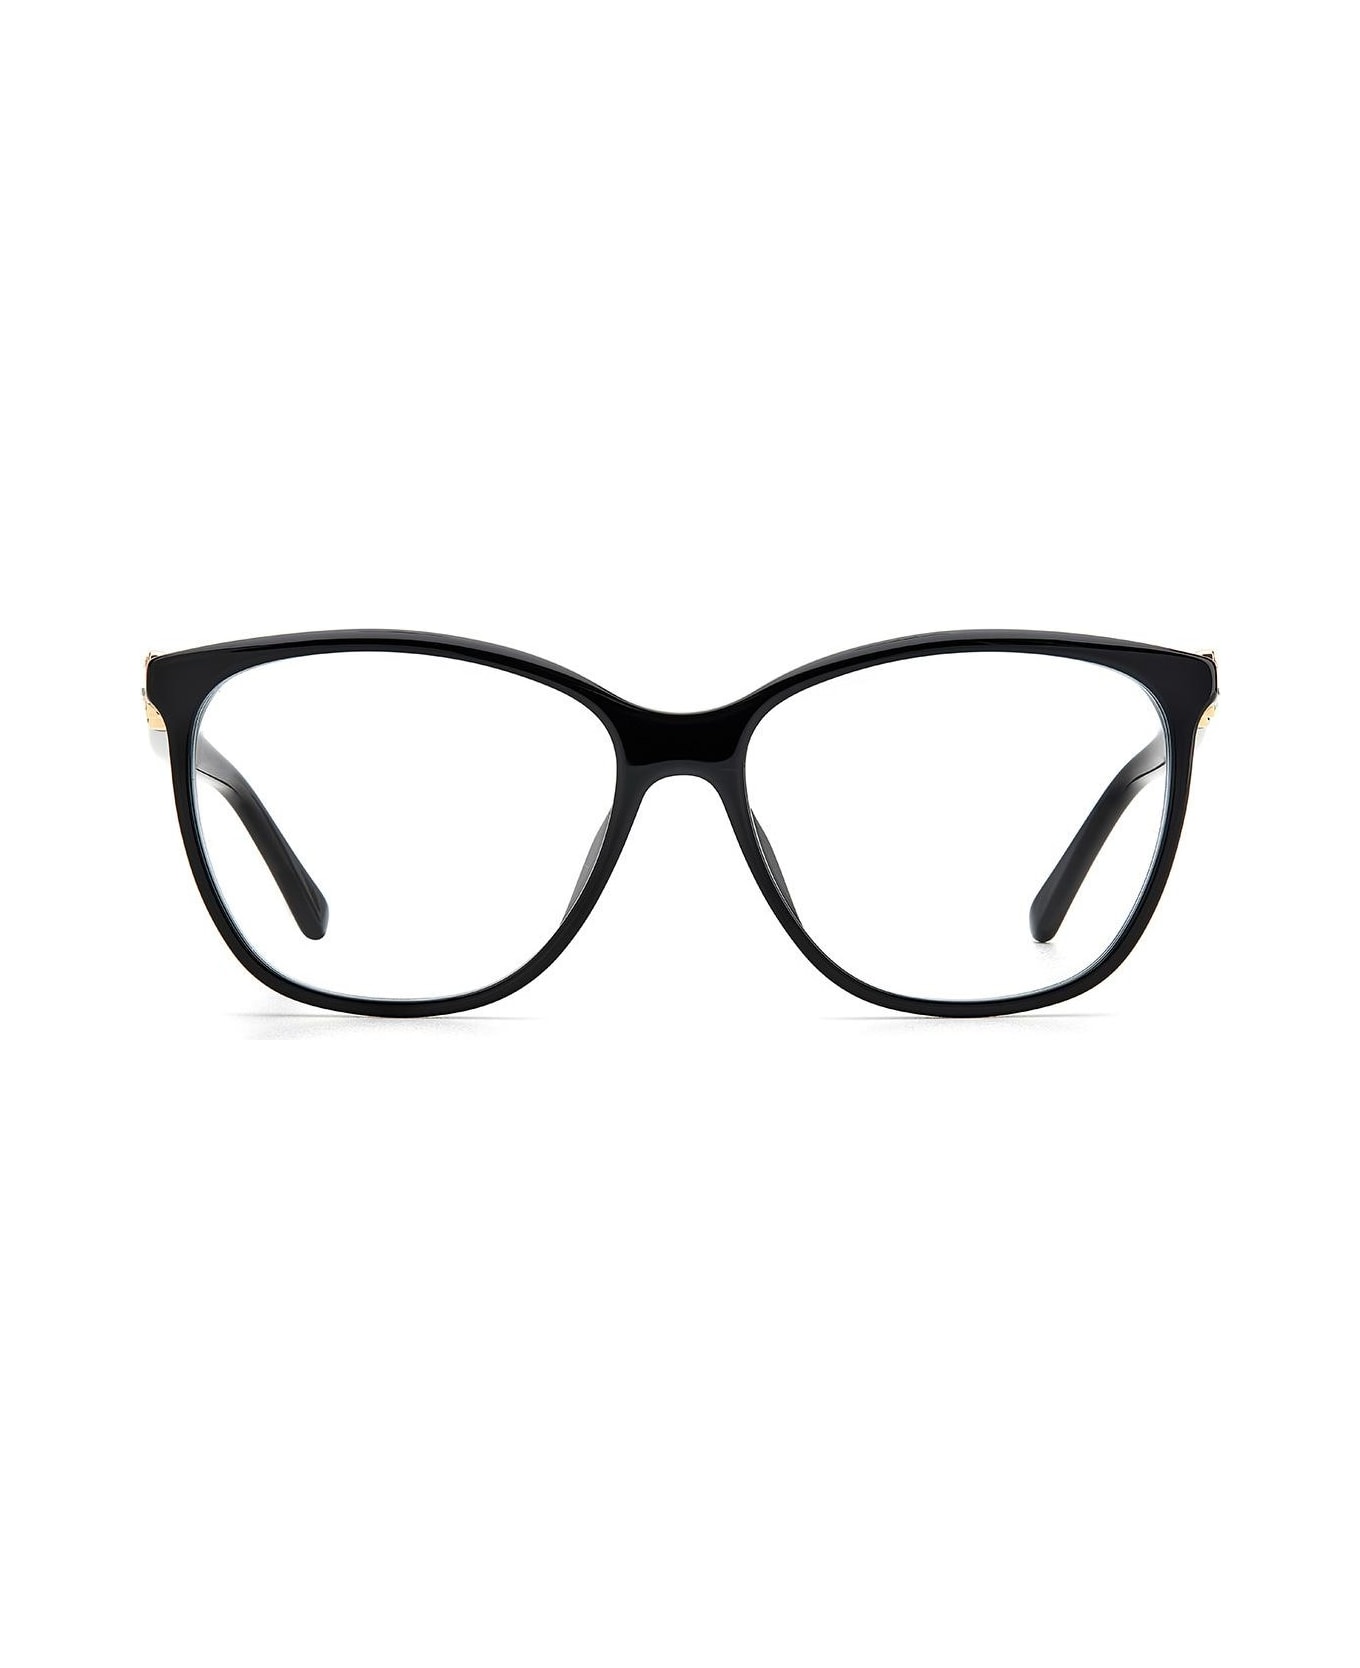 Jimmy Choo Eyewear Jc318/g Glasses - Nero